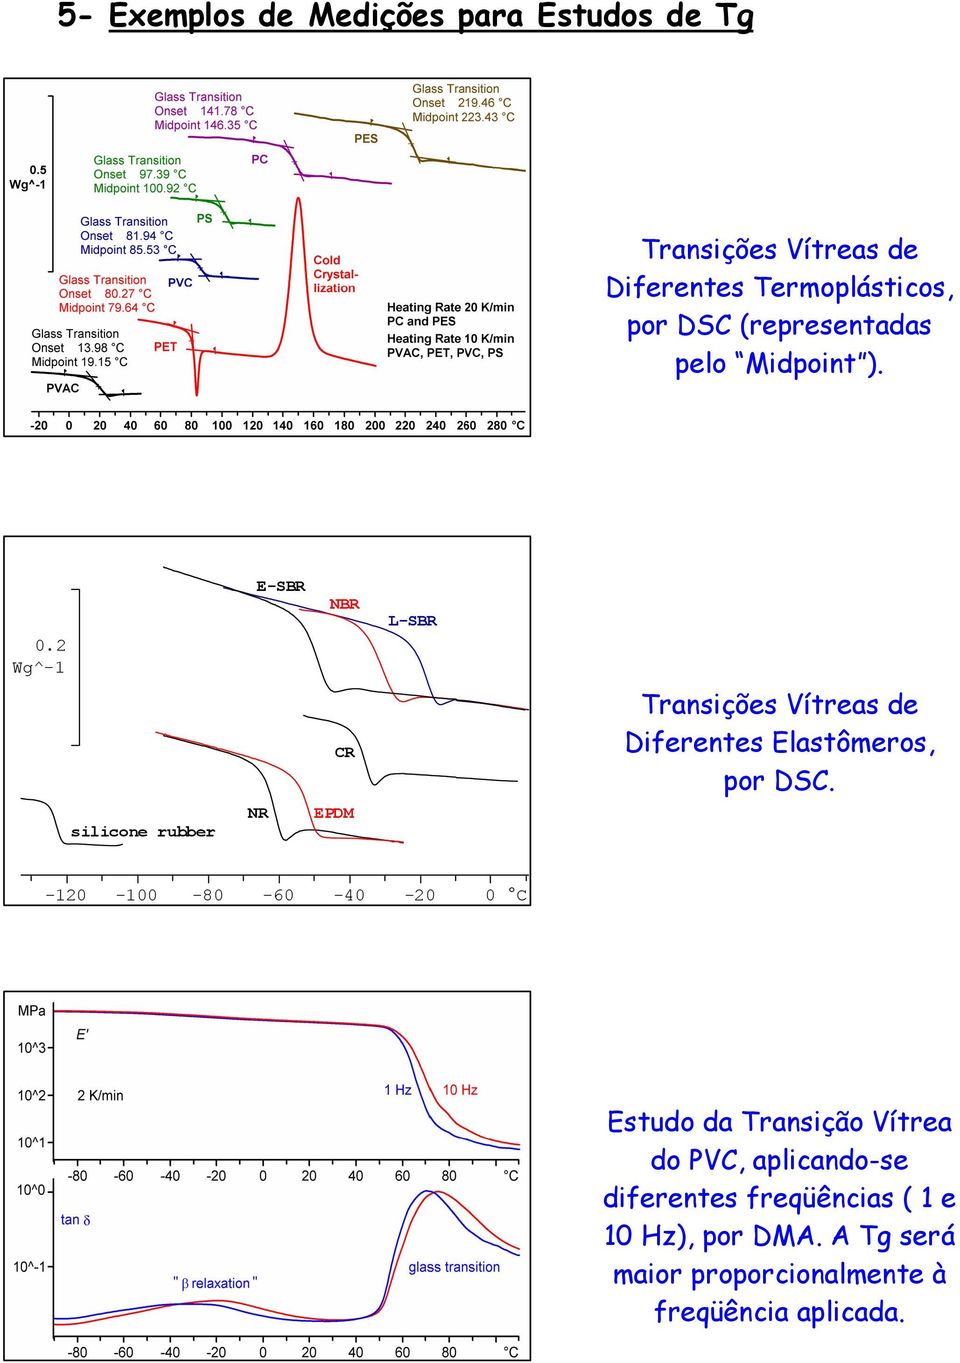 2 Wg^-1 E-SBR NBR L-SBR CR Transições Vítreas de Diferentes Elastômeros, por DSC.